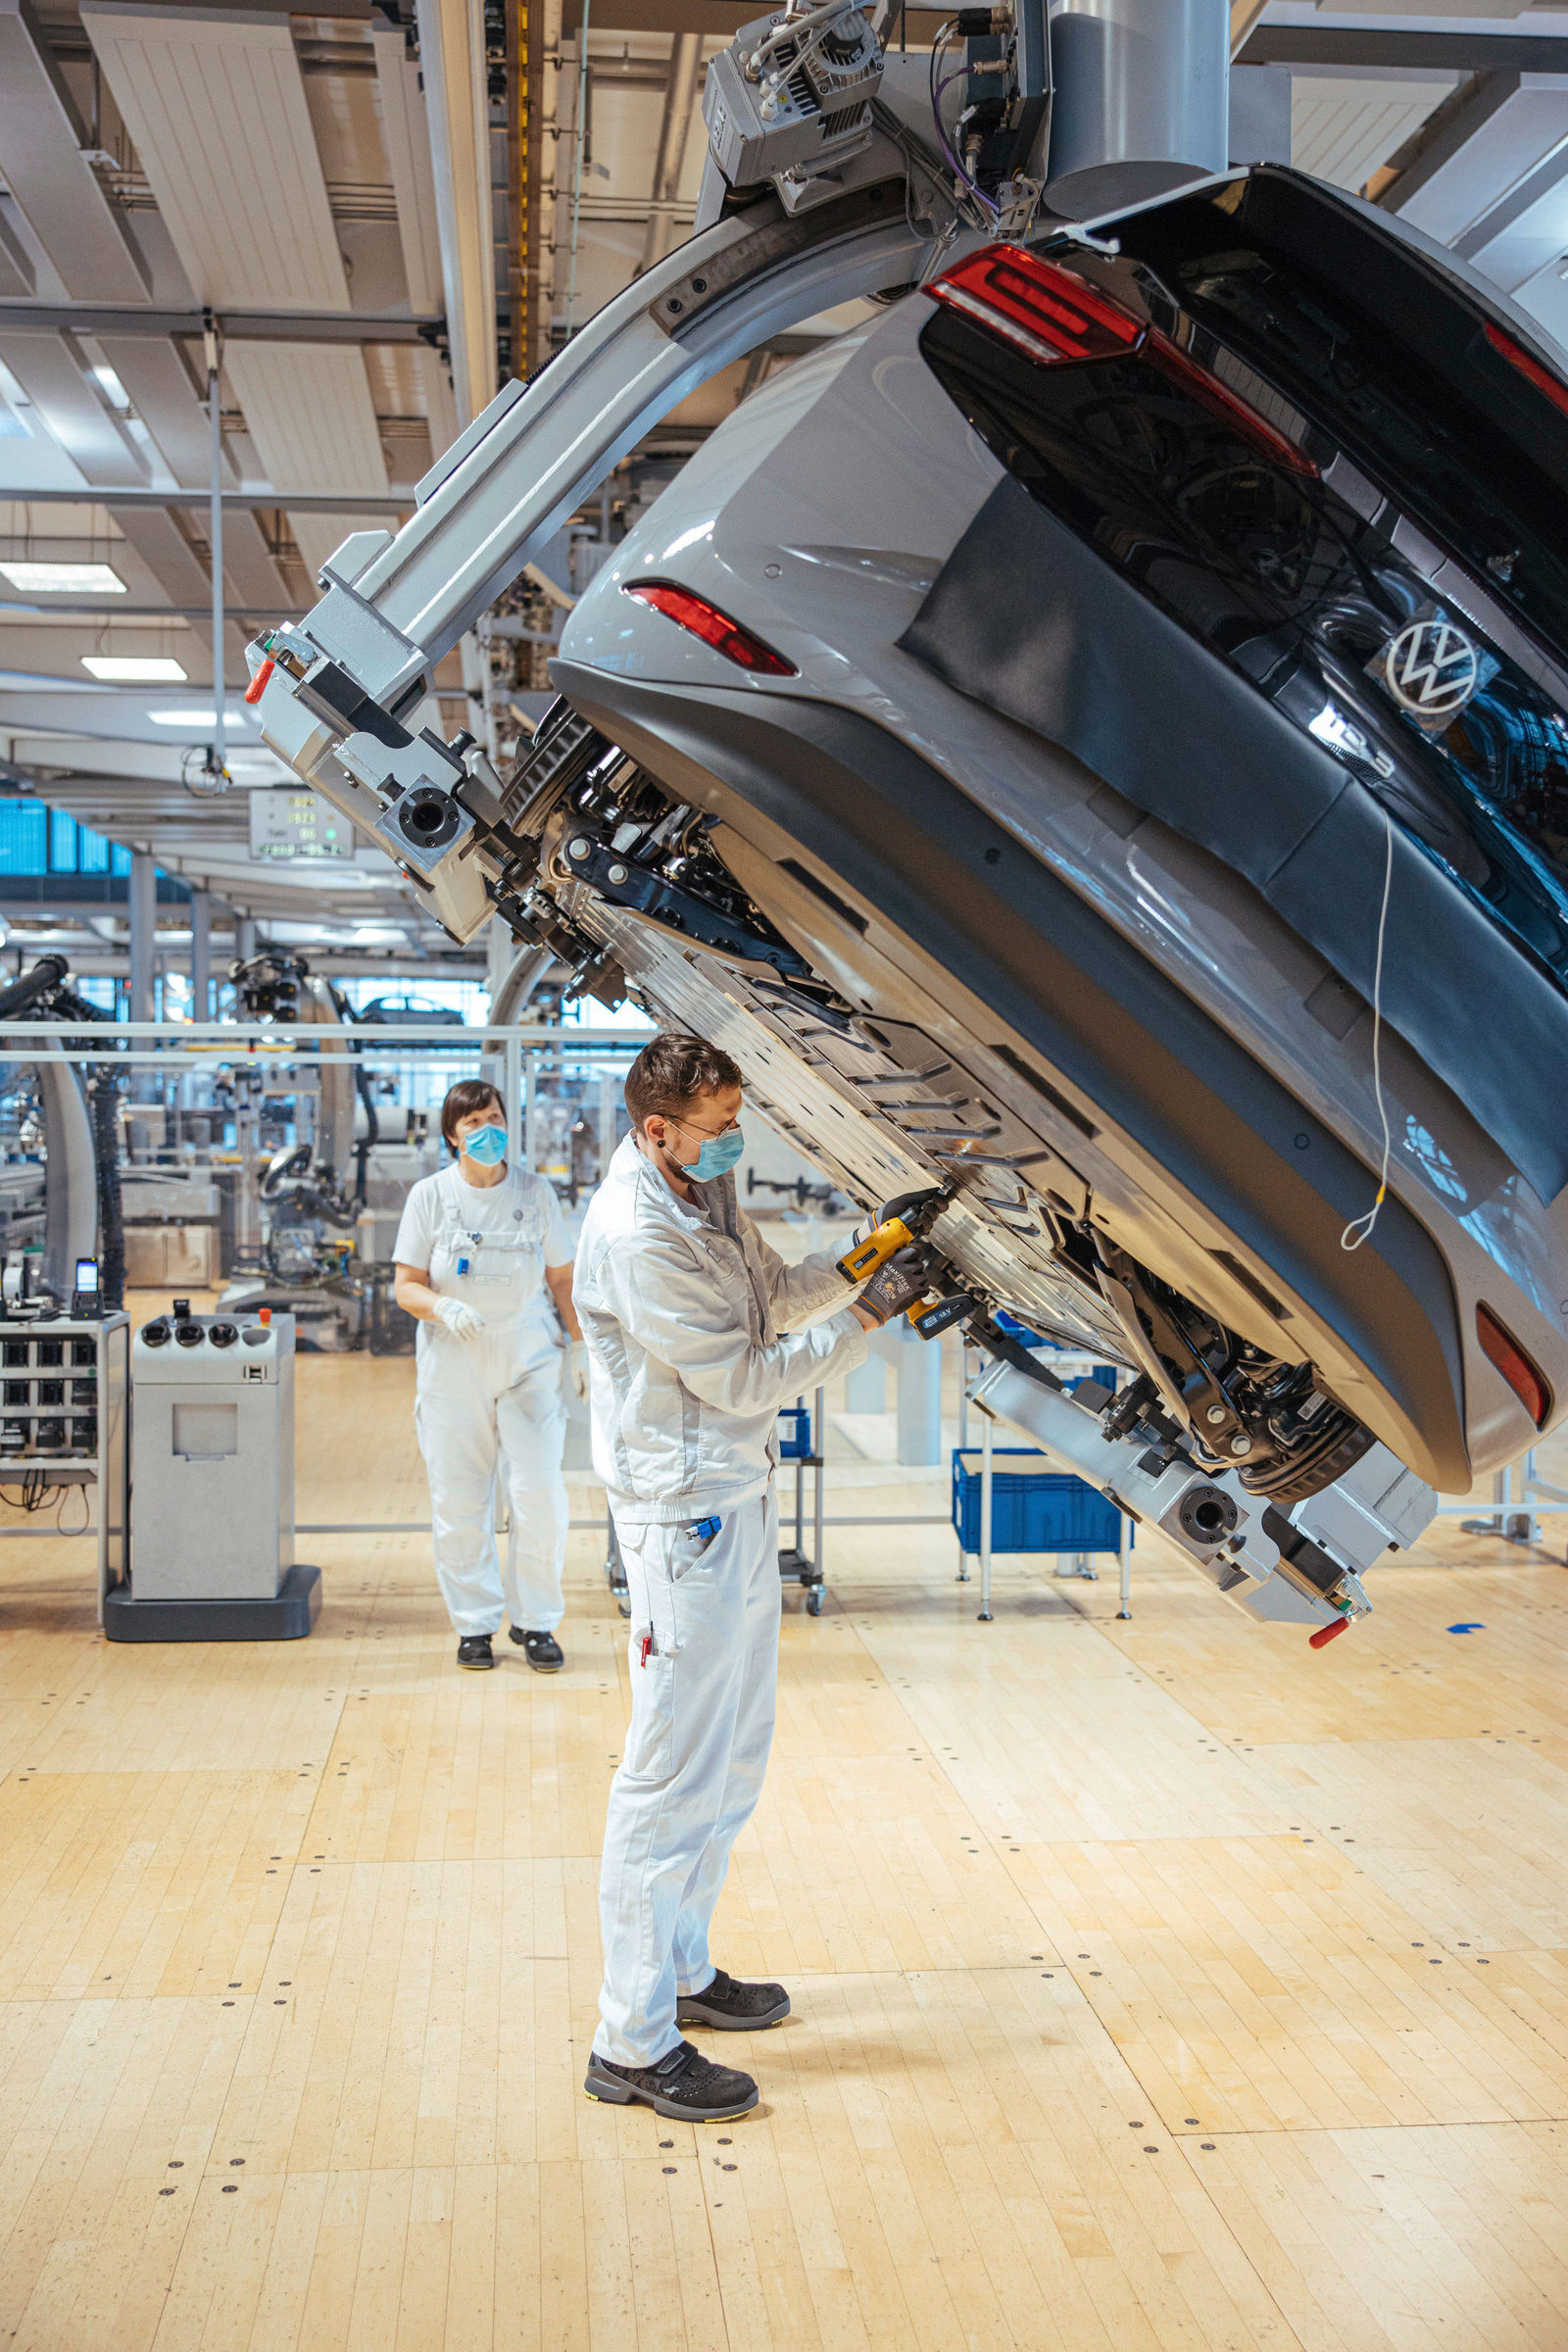 Start der ID.3 Serienproduktion: Gläserne Manufaktur Dresden wird Volkswagen Home of ID.